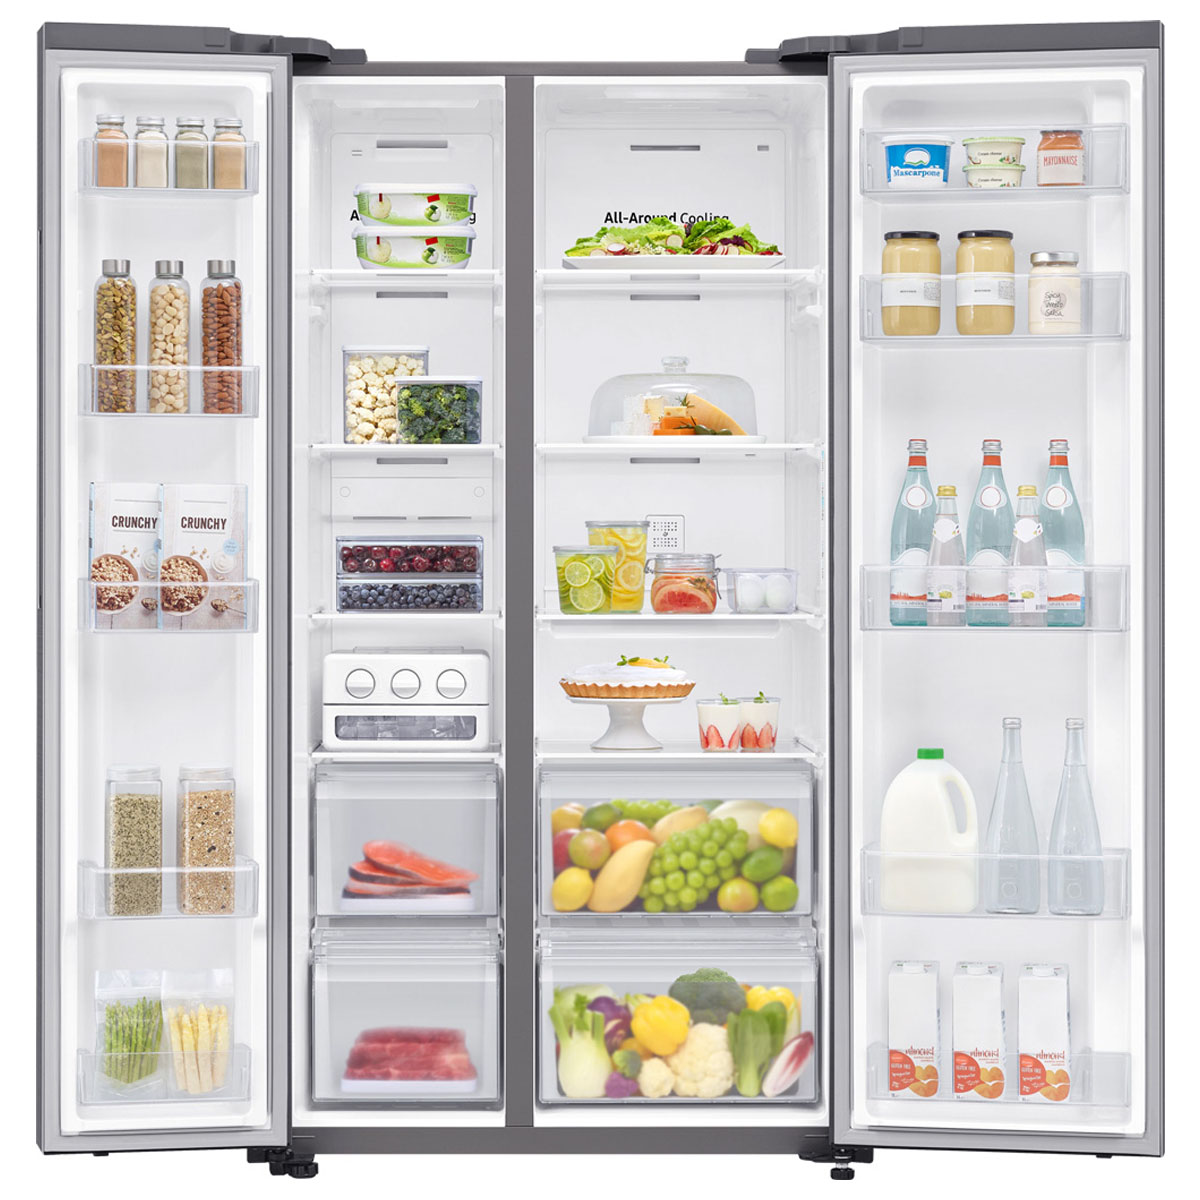 Tủ lạnh Samsung inverter 647 lít RS62R5001M9/SV